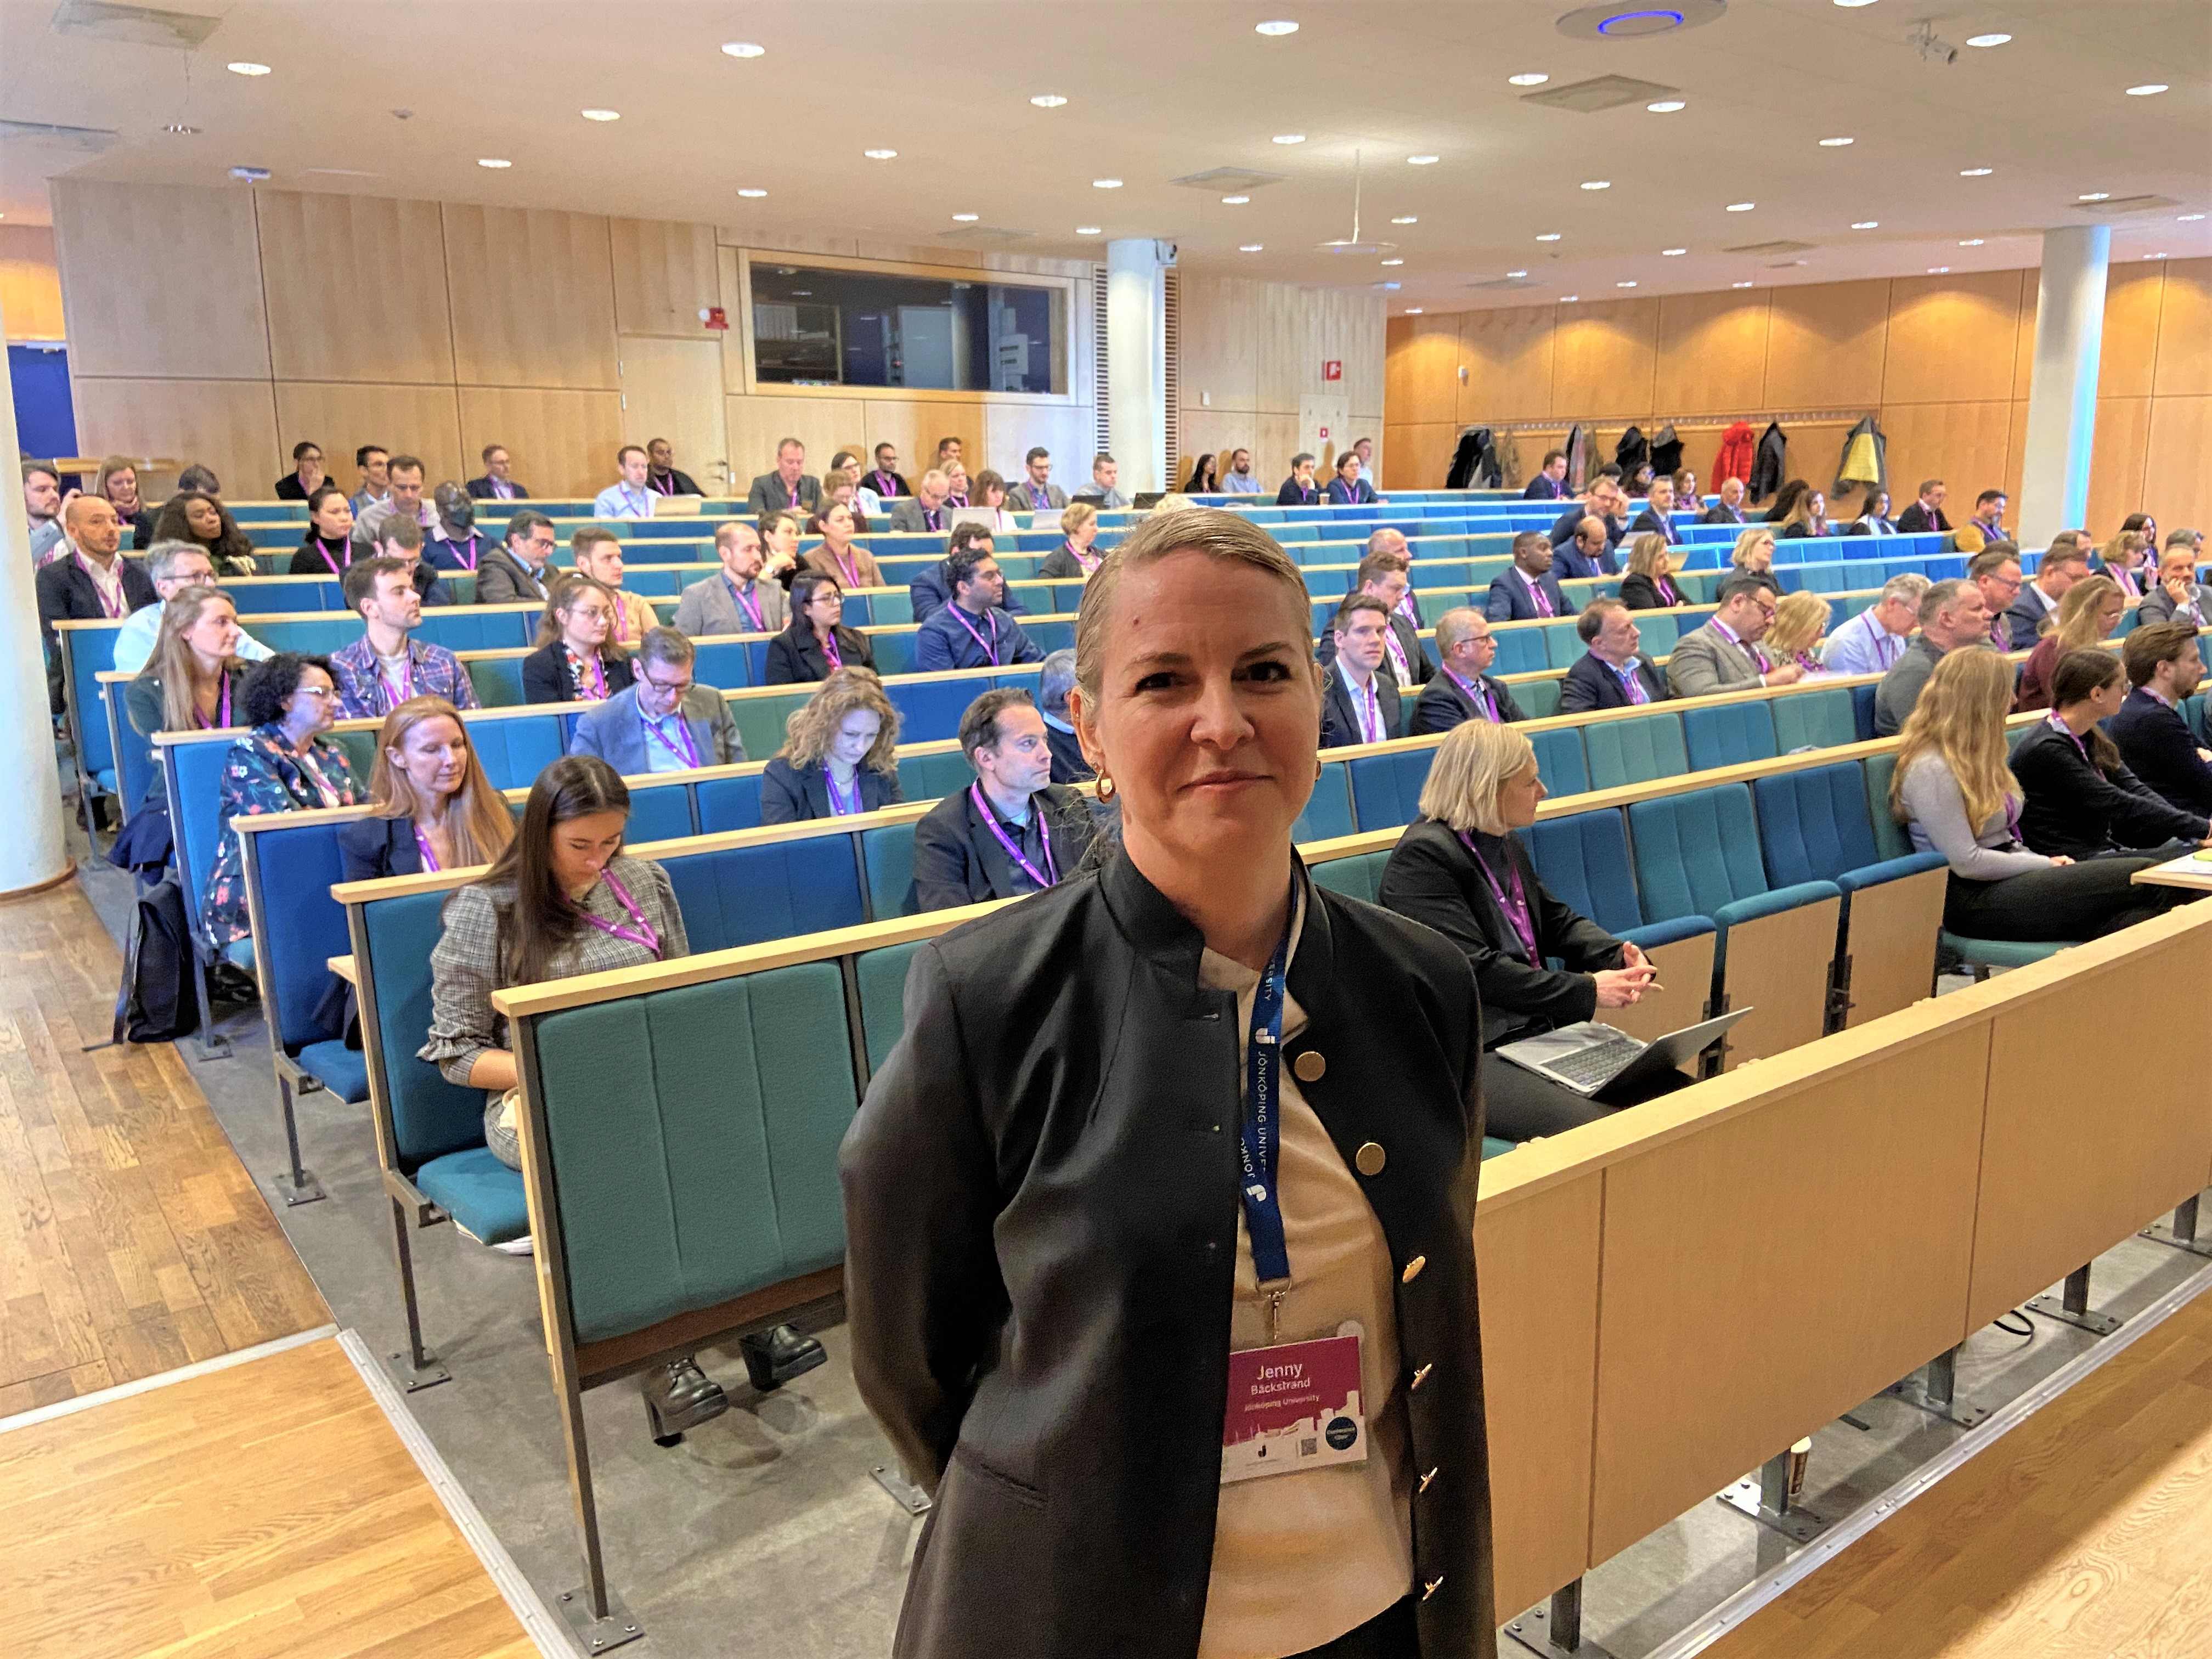 Jenny Bäckstrand during the IPSERA conference at Jönköping University.